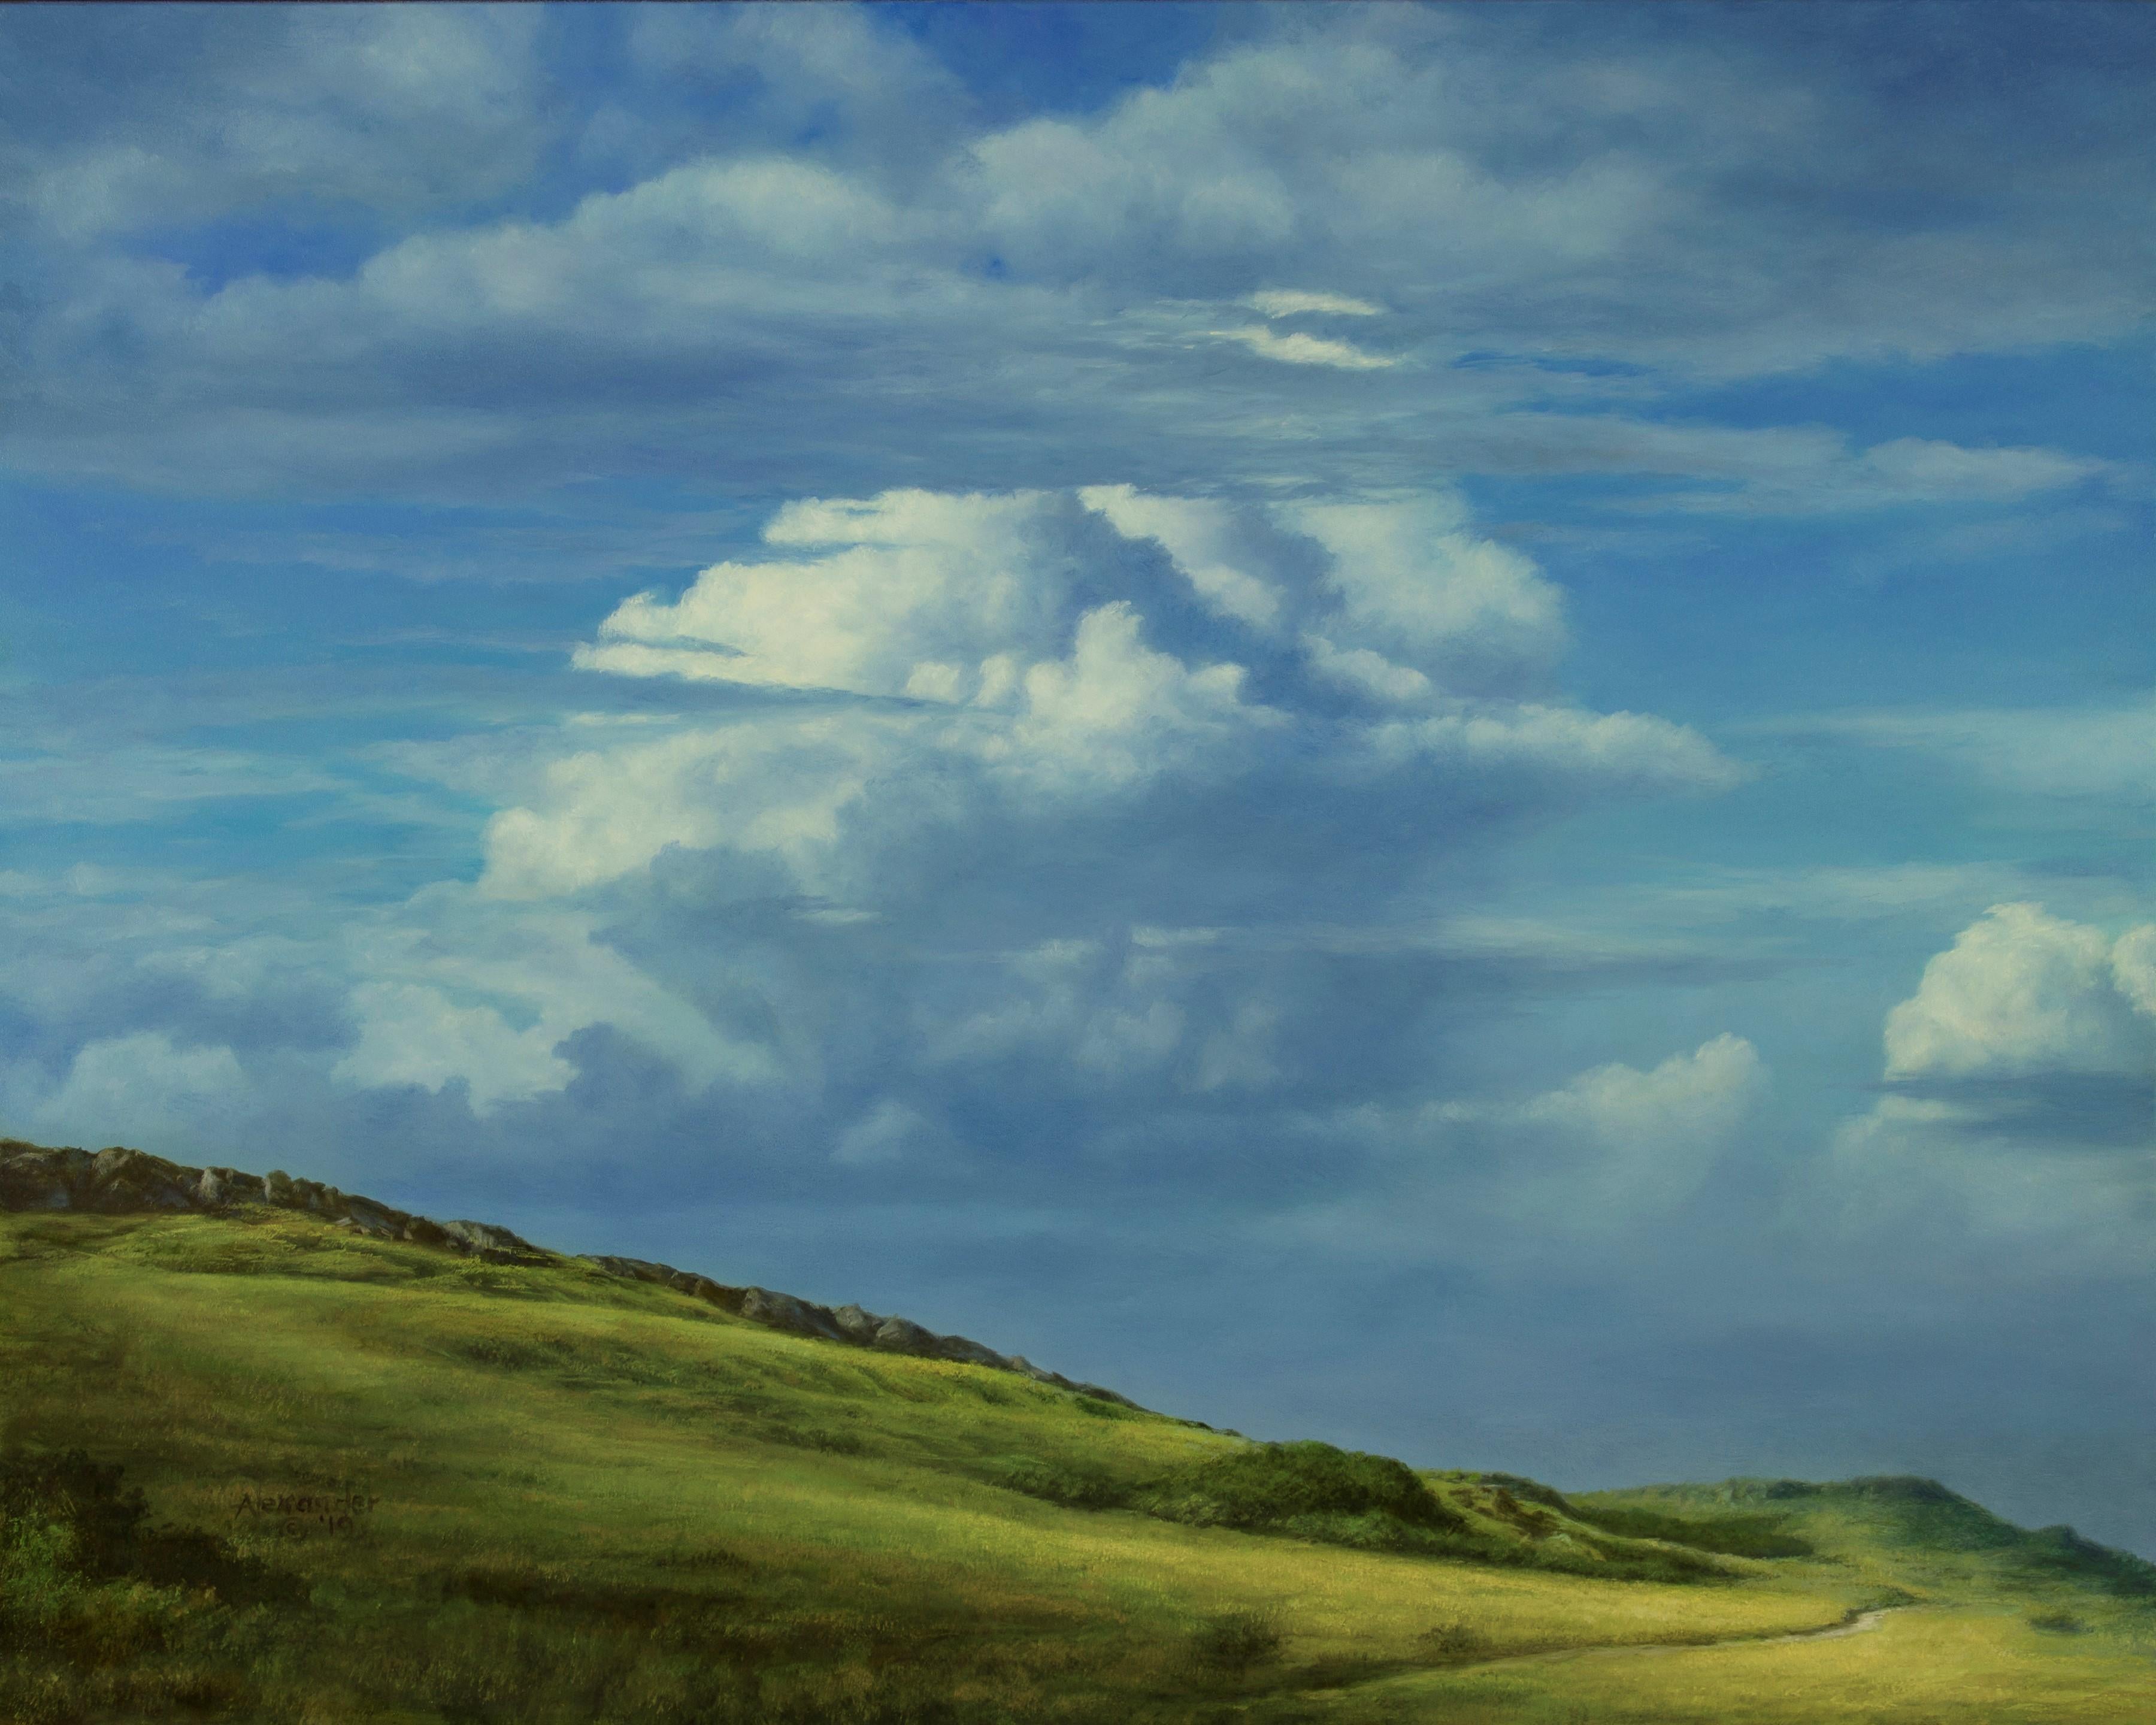 Landscape Painting Rob Alexander - "Le chemin qui ne s'enroule pas" - Peinture à l'huile